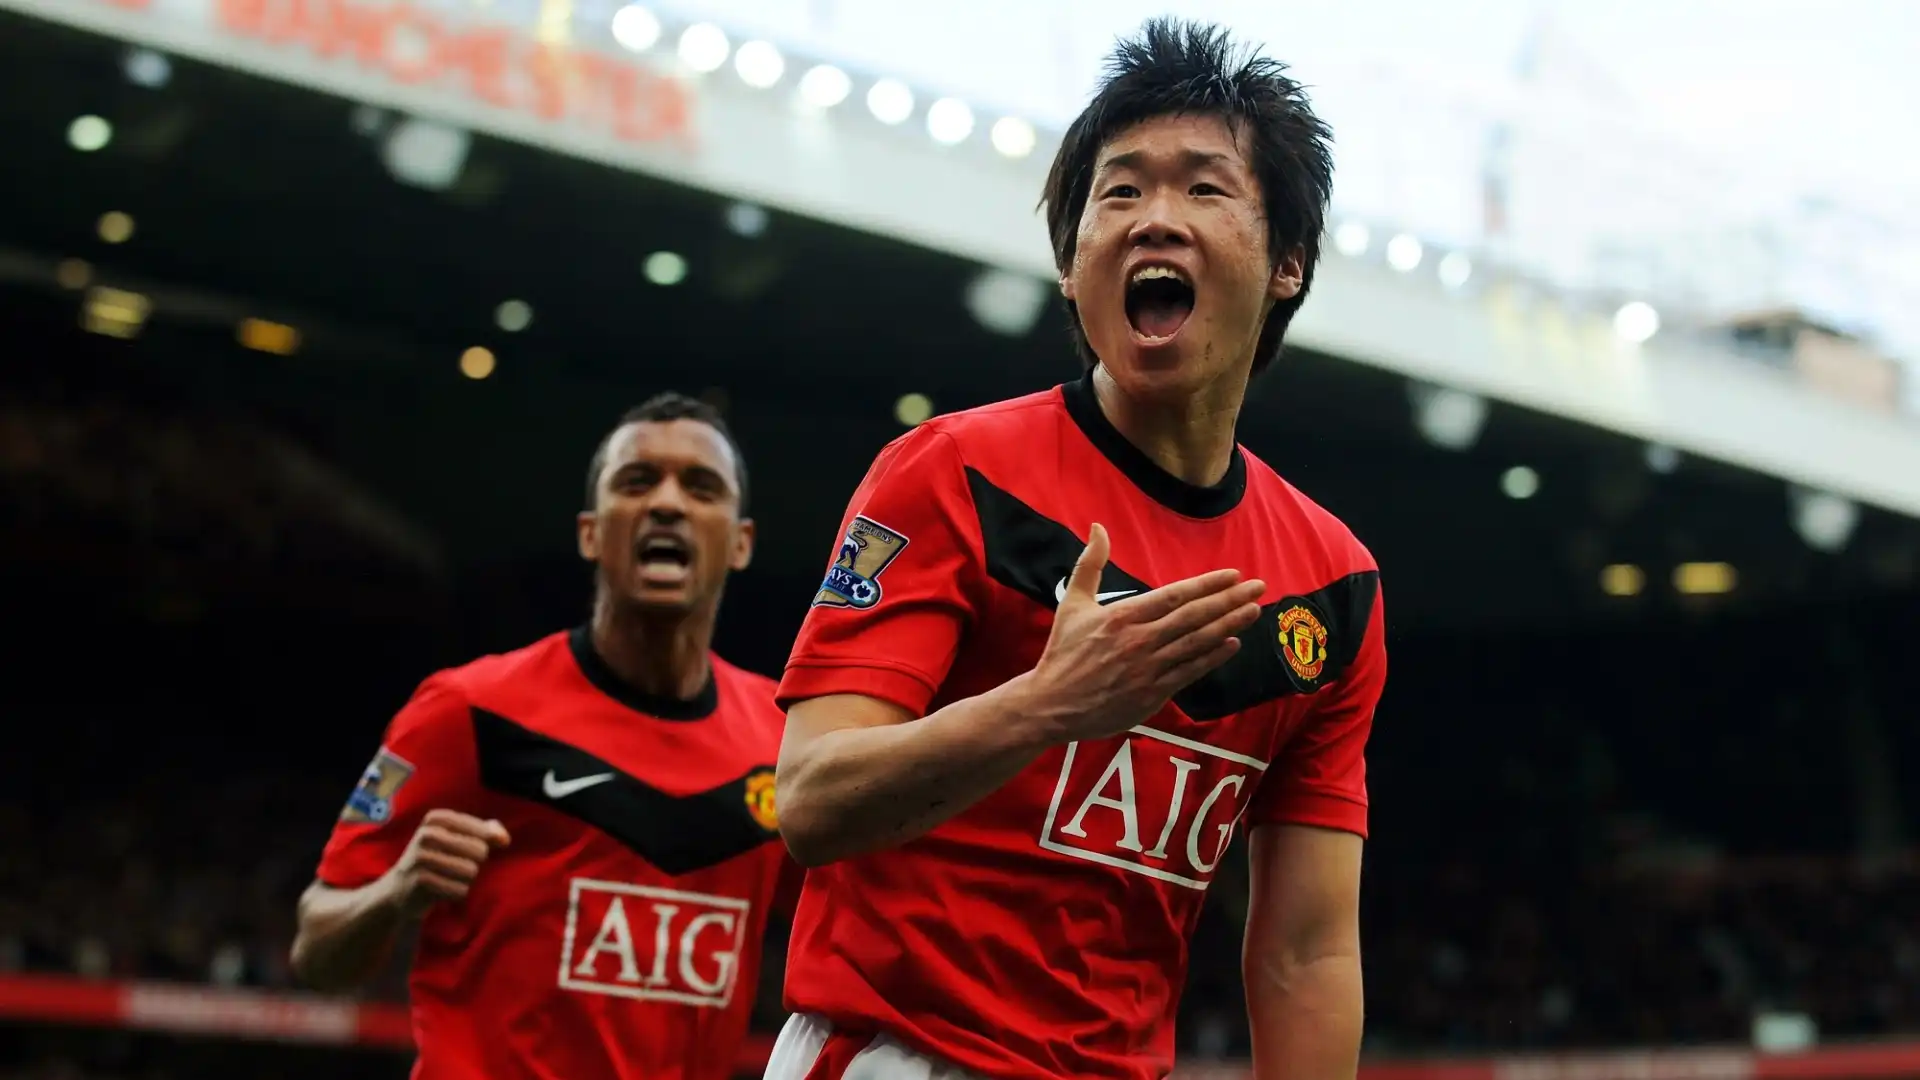 Park Ji-sung (Calcio): patrimonio netto stimato 17 milioni di dollari. Grande ex giocatore del Manchester United, ha vinto 4 Premier League e una Champions League